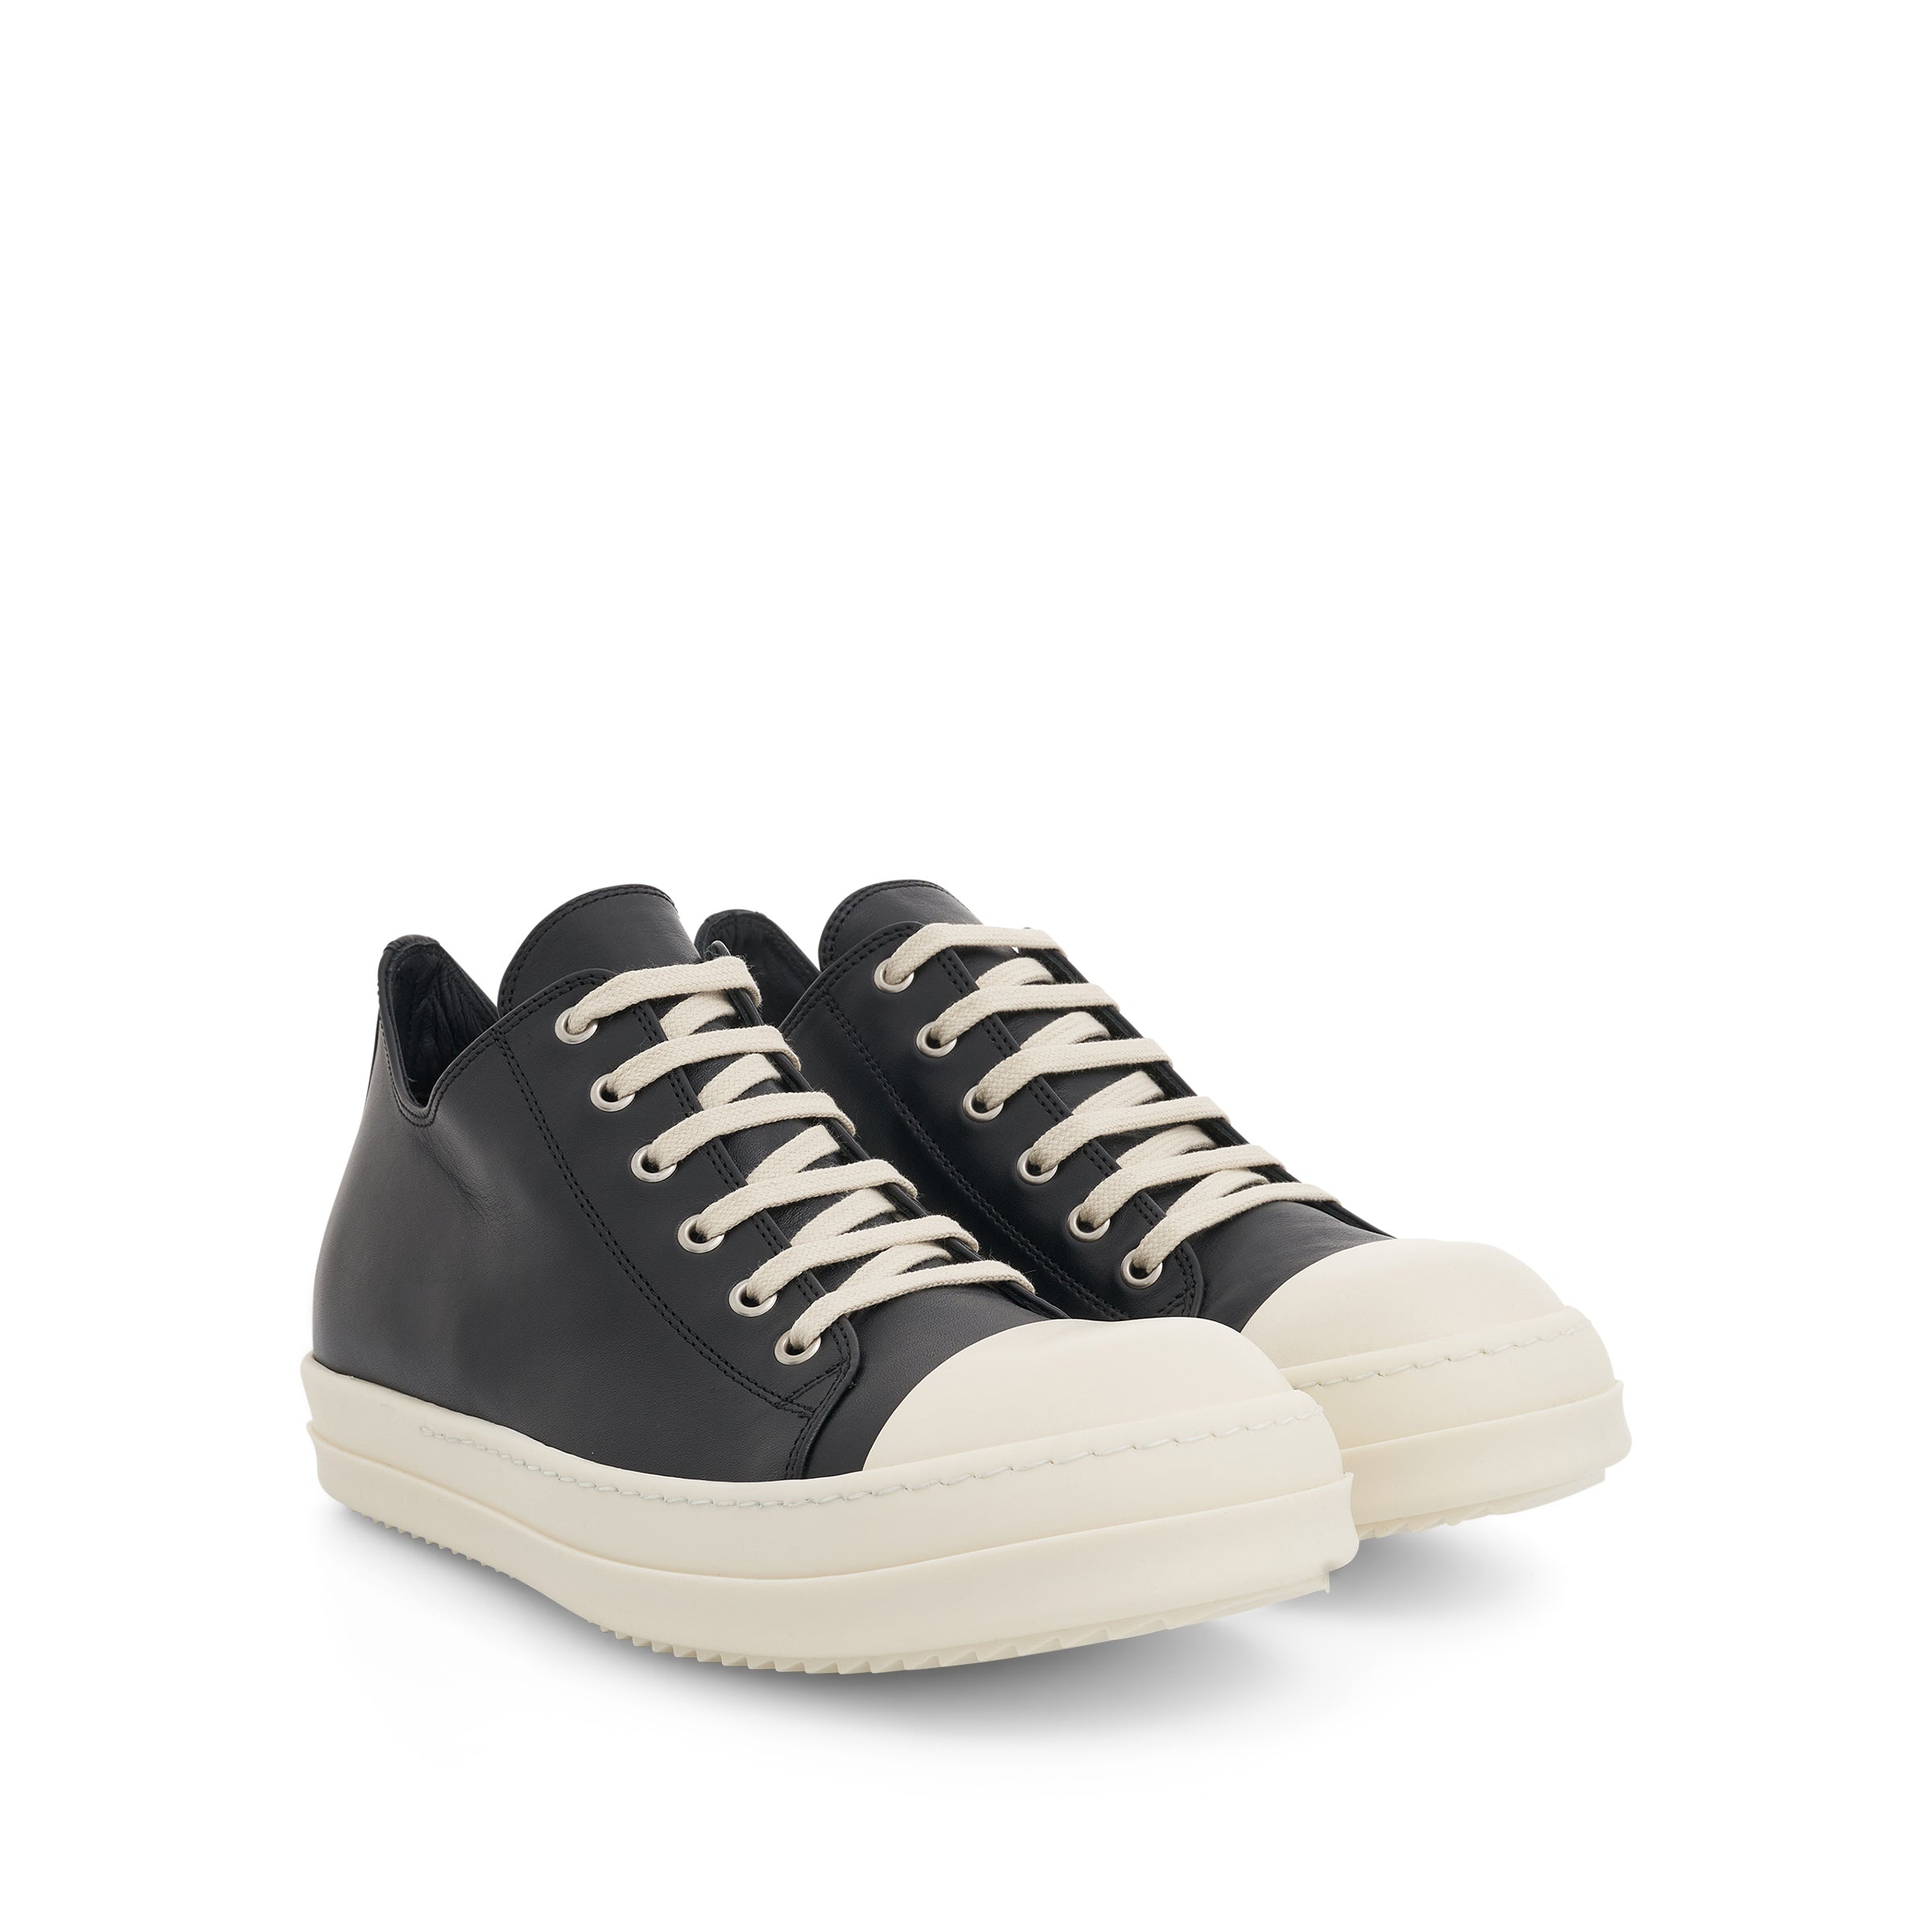 EDFU Low Leather Sneaker in Black/Milk - 2